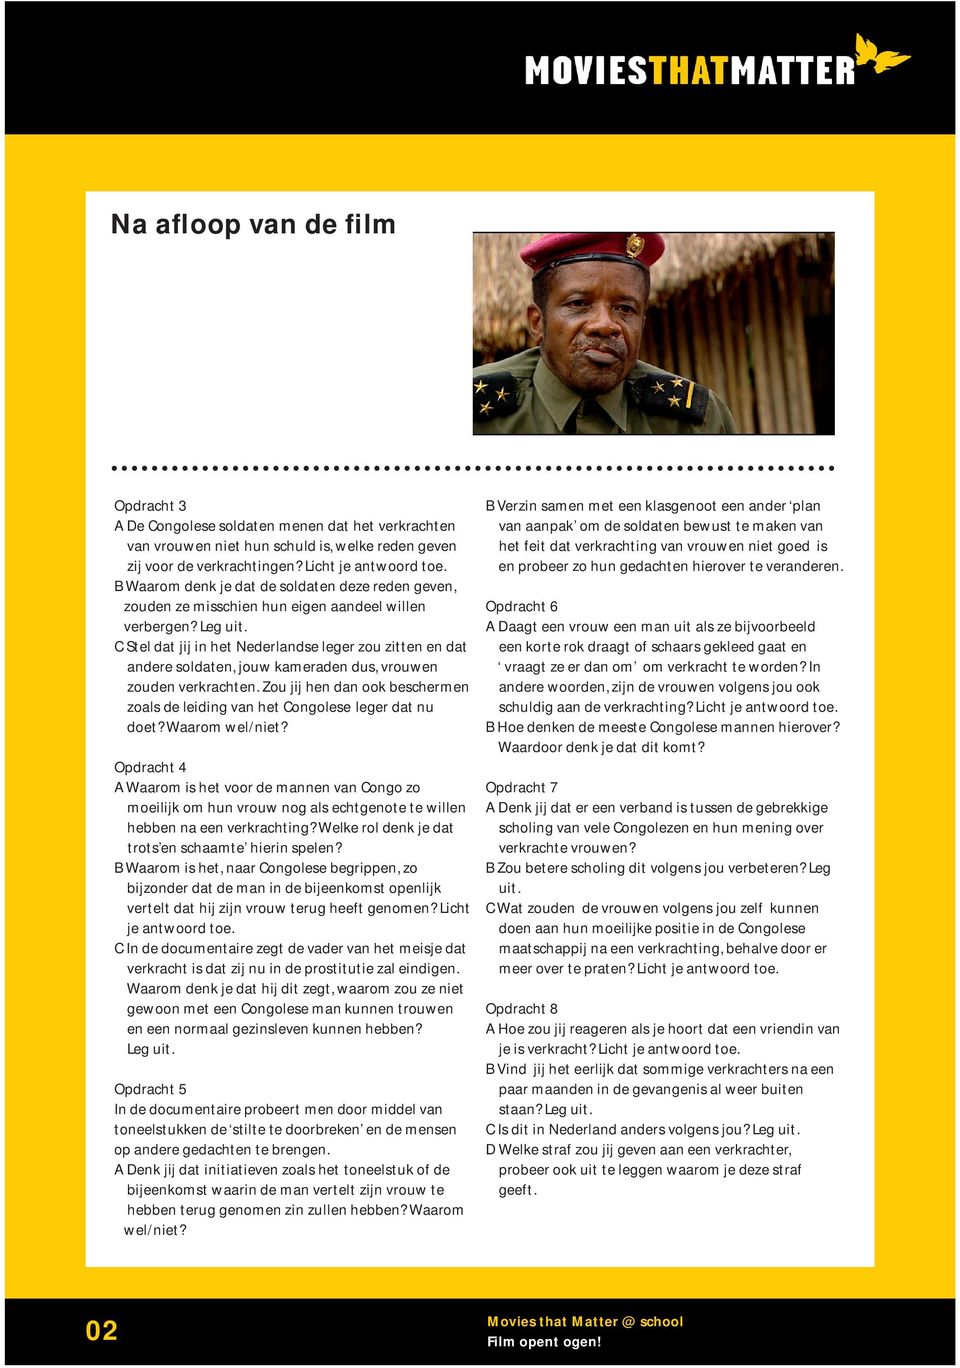 C Stel dat jij in het Nederlandse leger zou zitten en dat andere soldaten, jouw kameraden dus, vrouwen zouden verkrachten. Zou jij hen dan ook beschermen zoals de leiding van het Congolese doet?